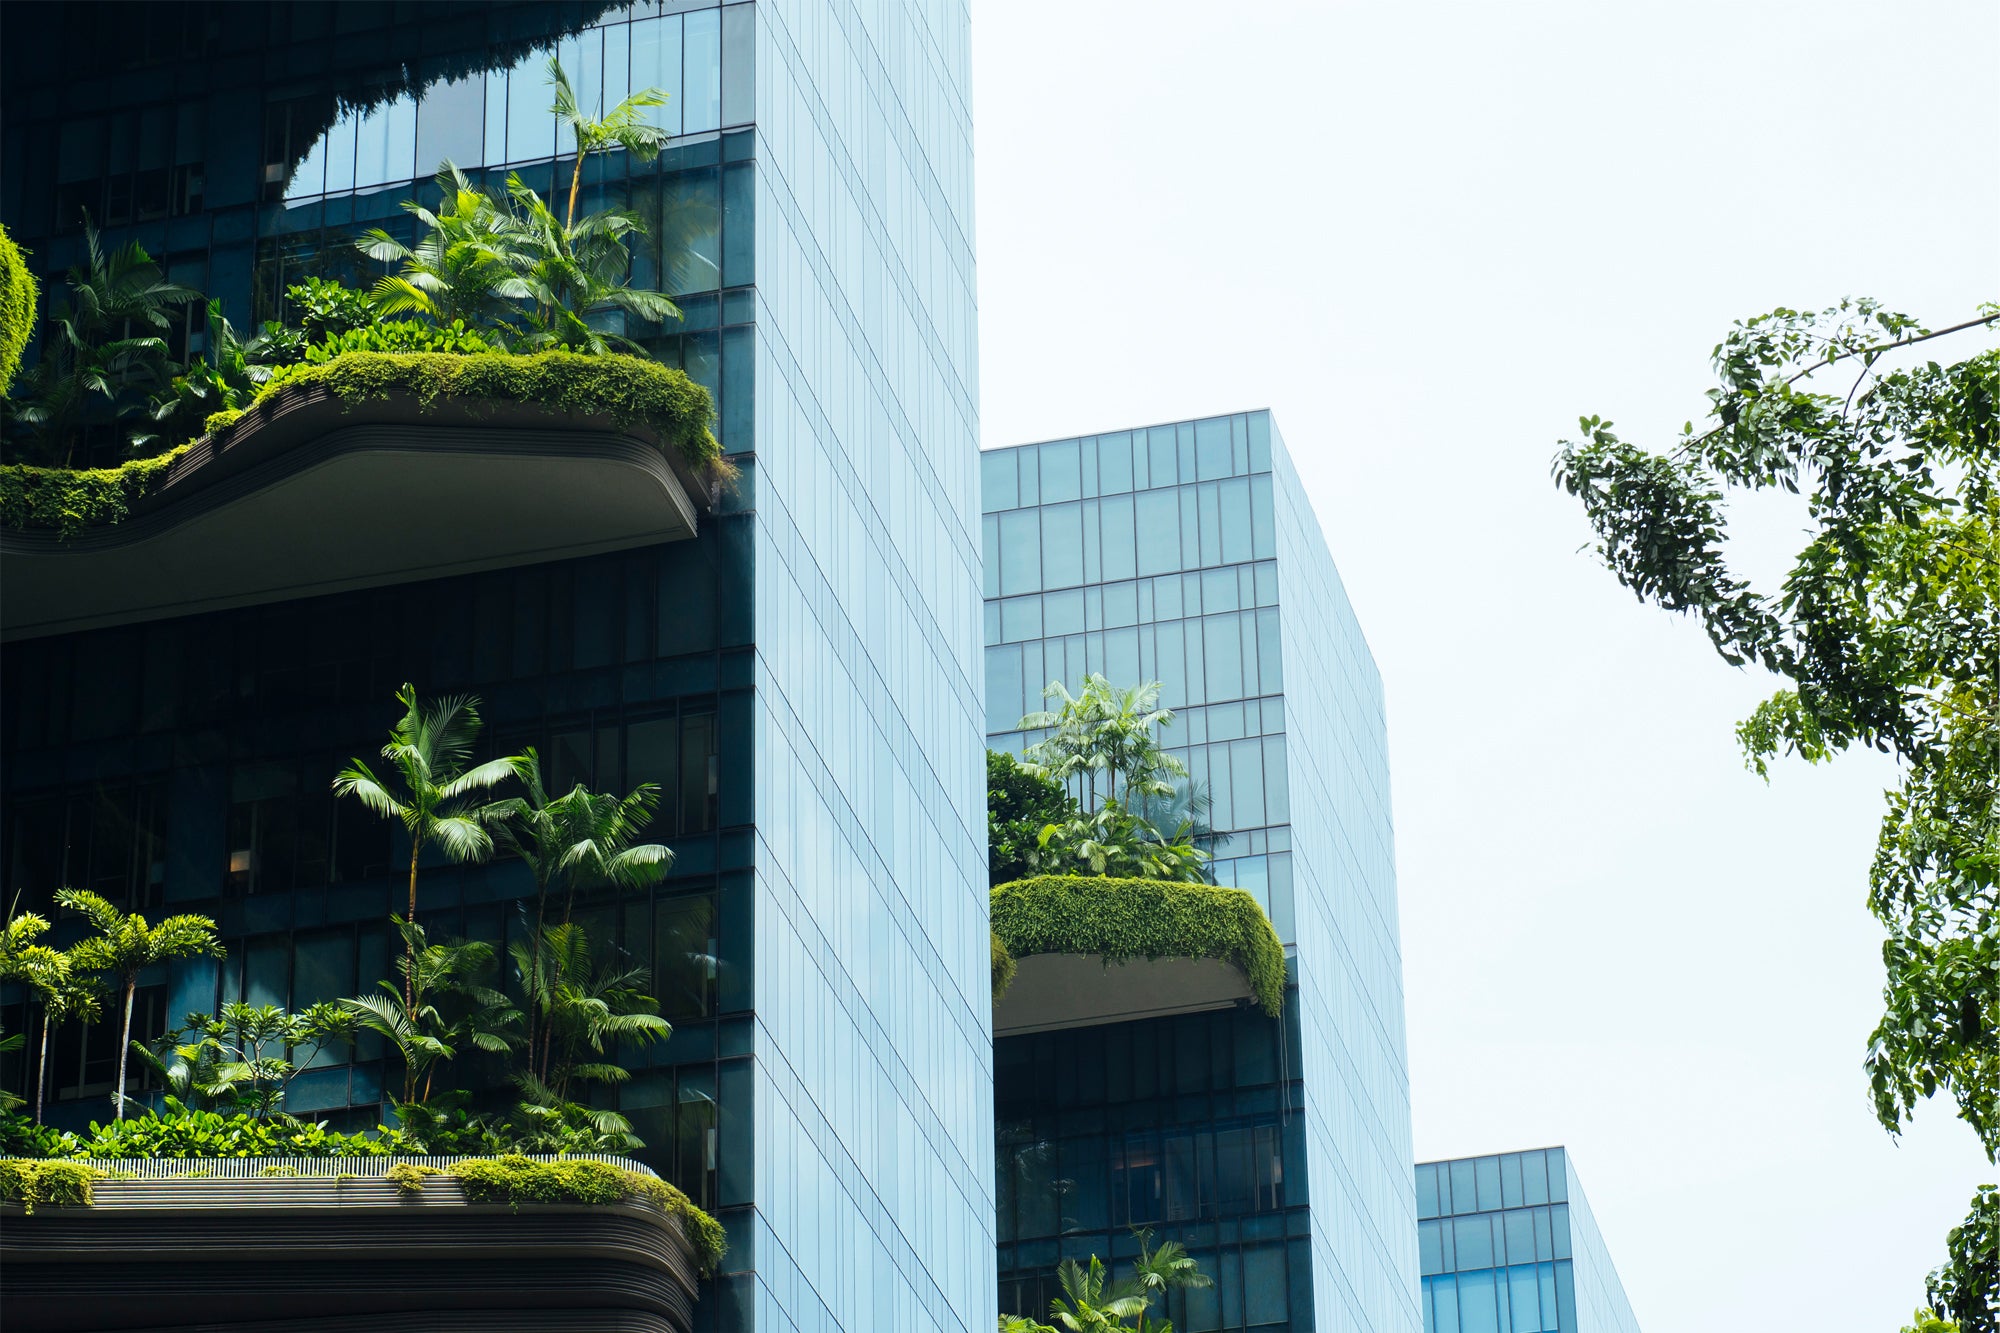 A contemporary vertical garden building in Singapore.